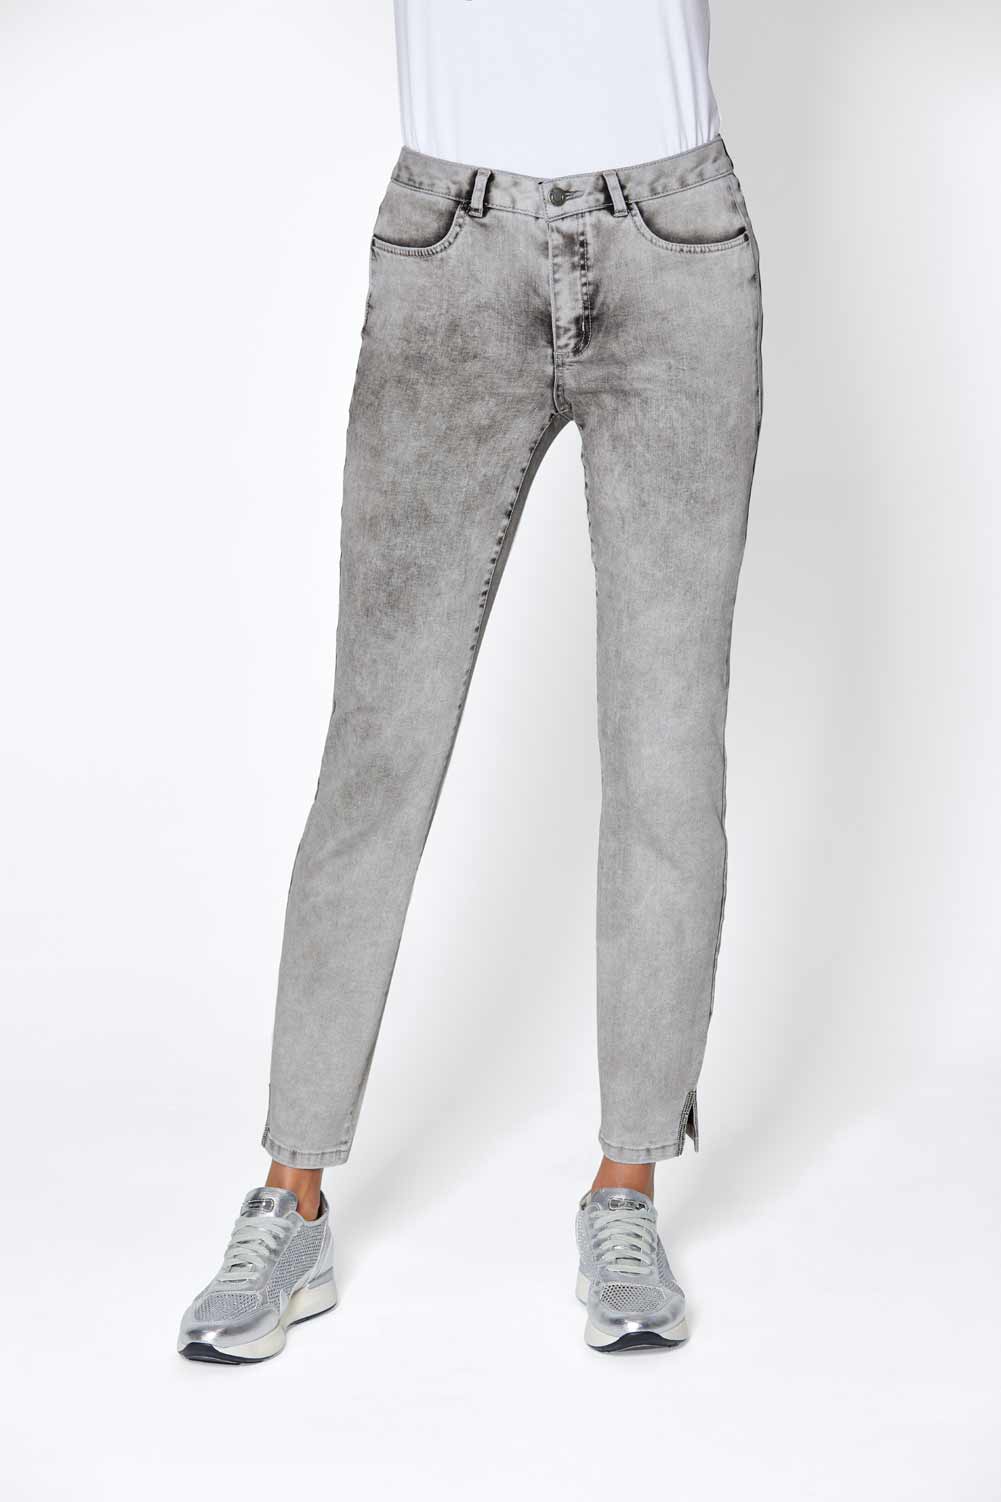 CRéATION L PREMIUM Damen Luxus-Stretch-Jeans, grey-denim